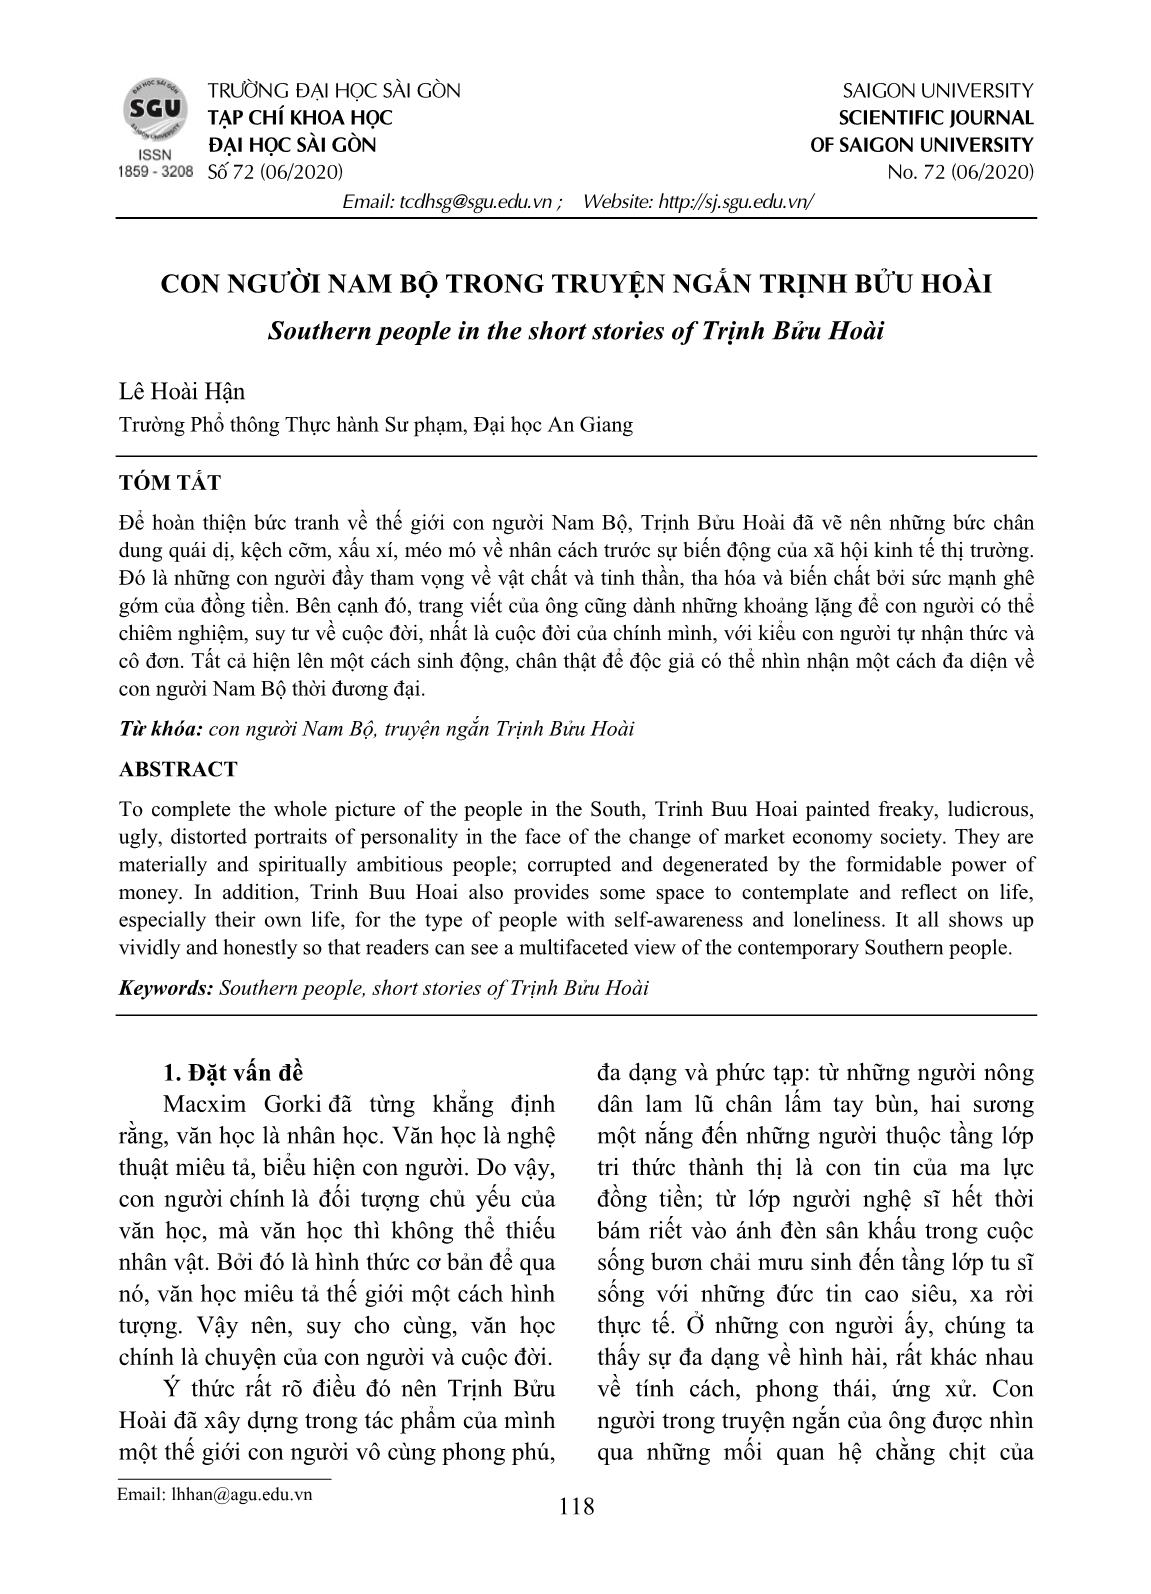 Con người Nam Bộ trong truyện ngắn Trịnh Bửu Hoài trang 1